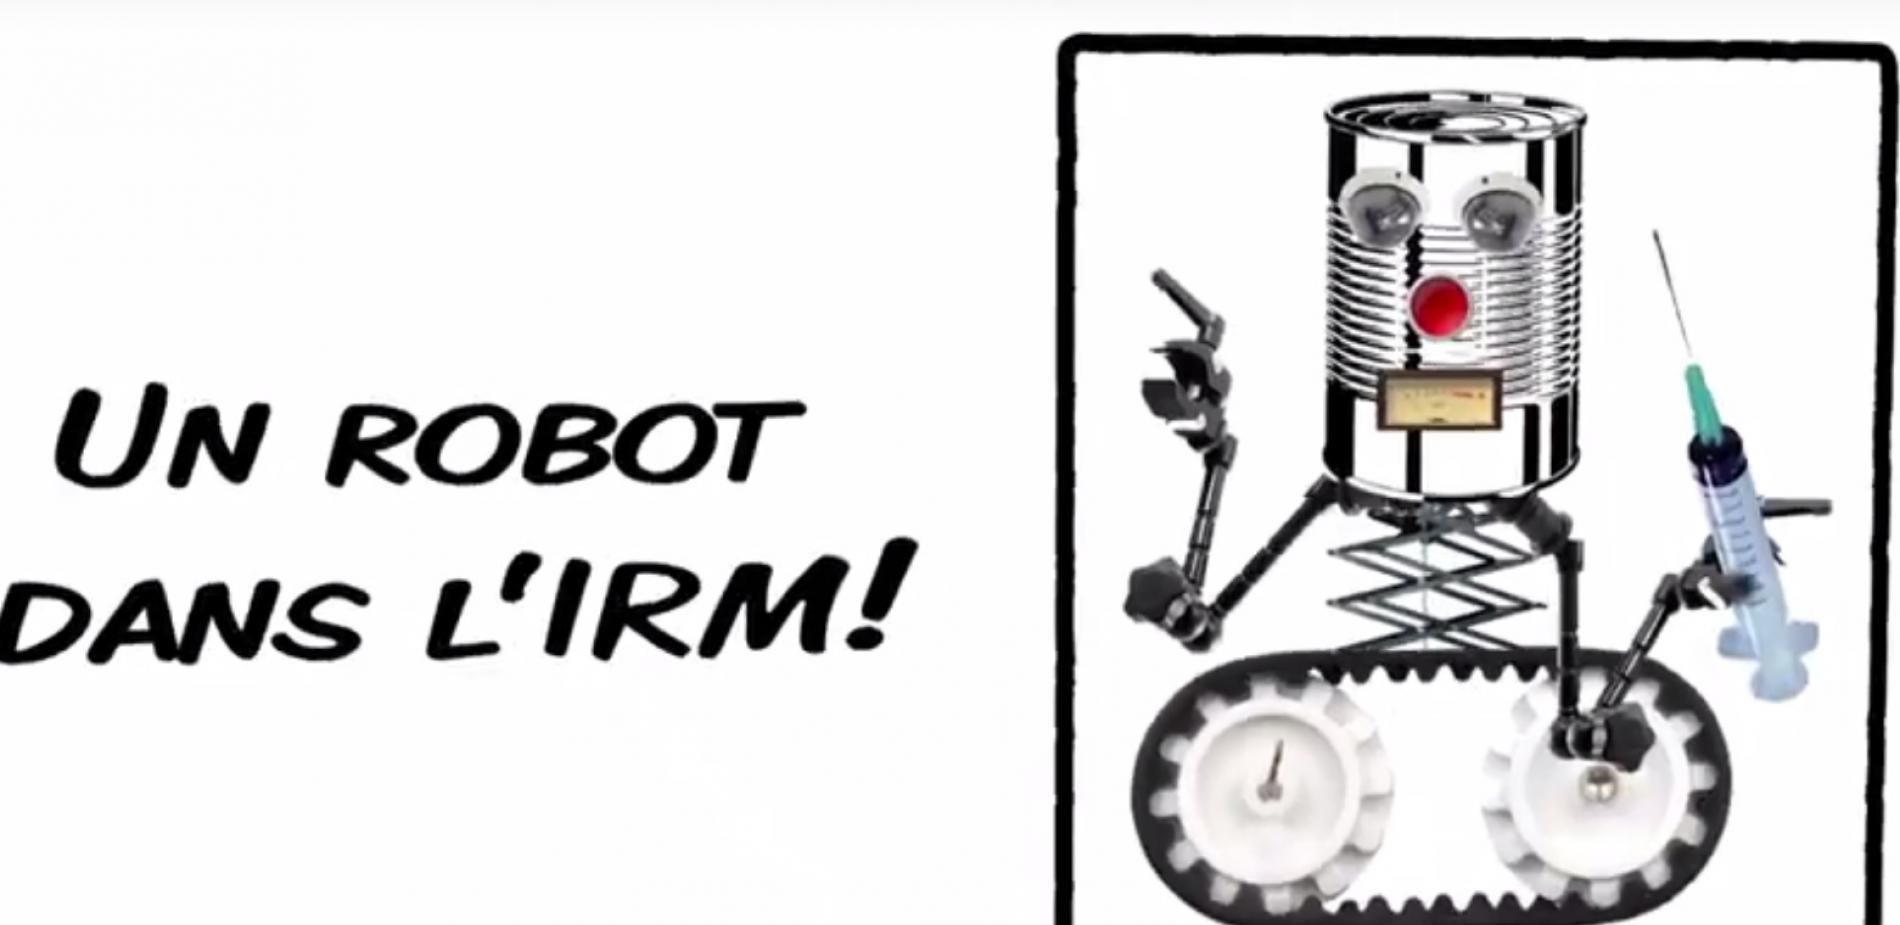 Robacus, un robot dans l'IRM